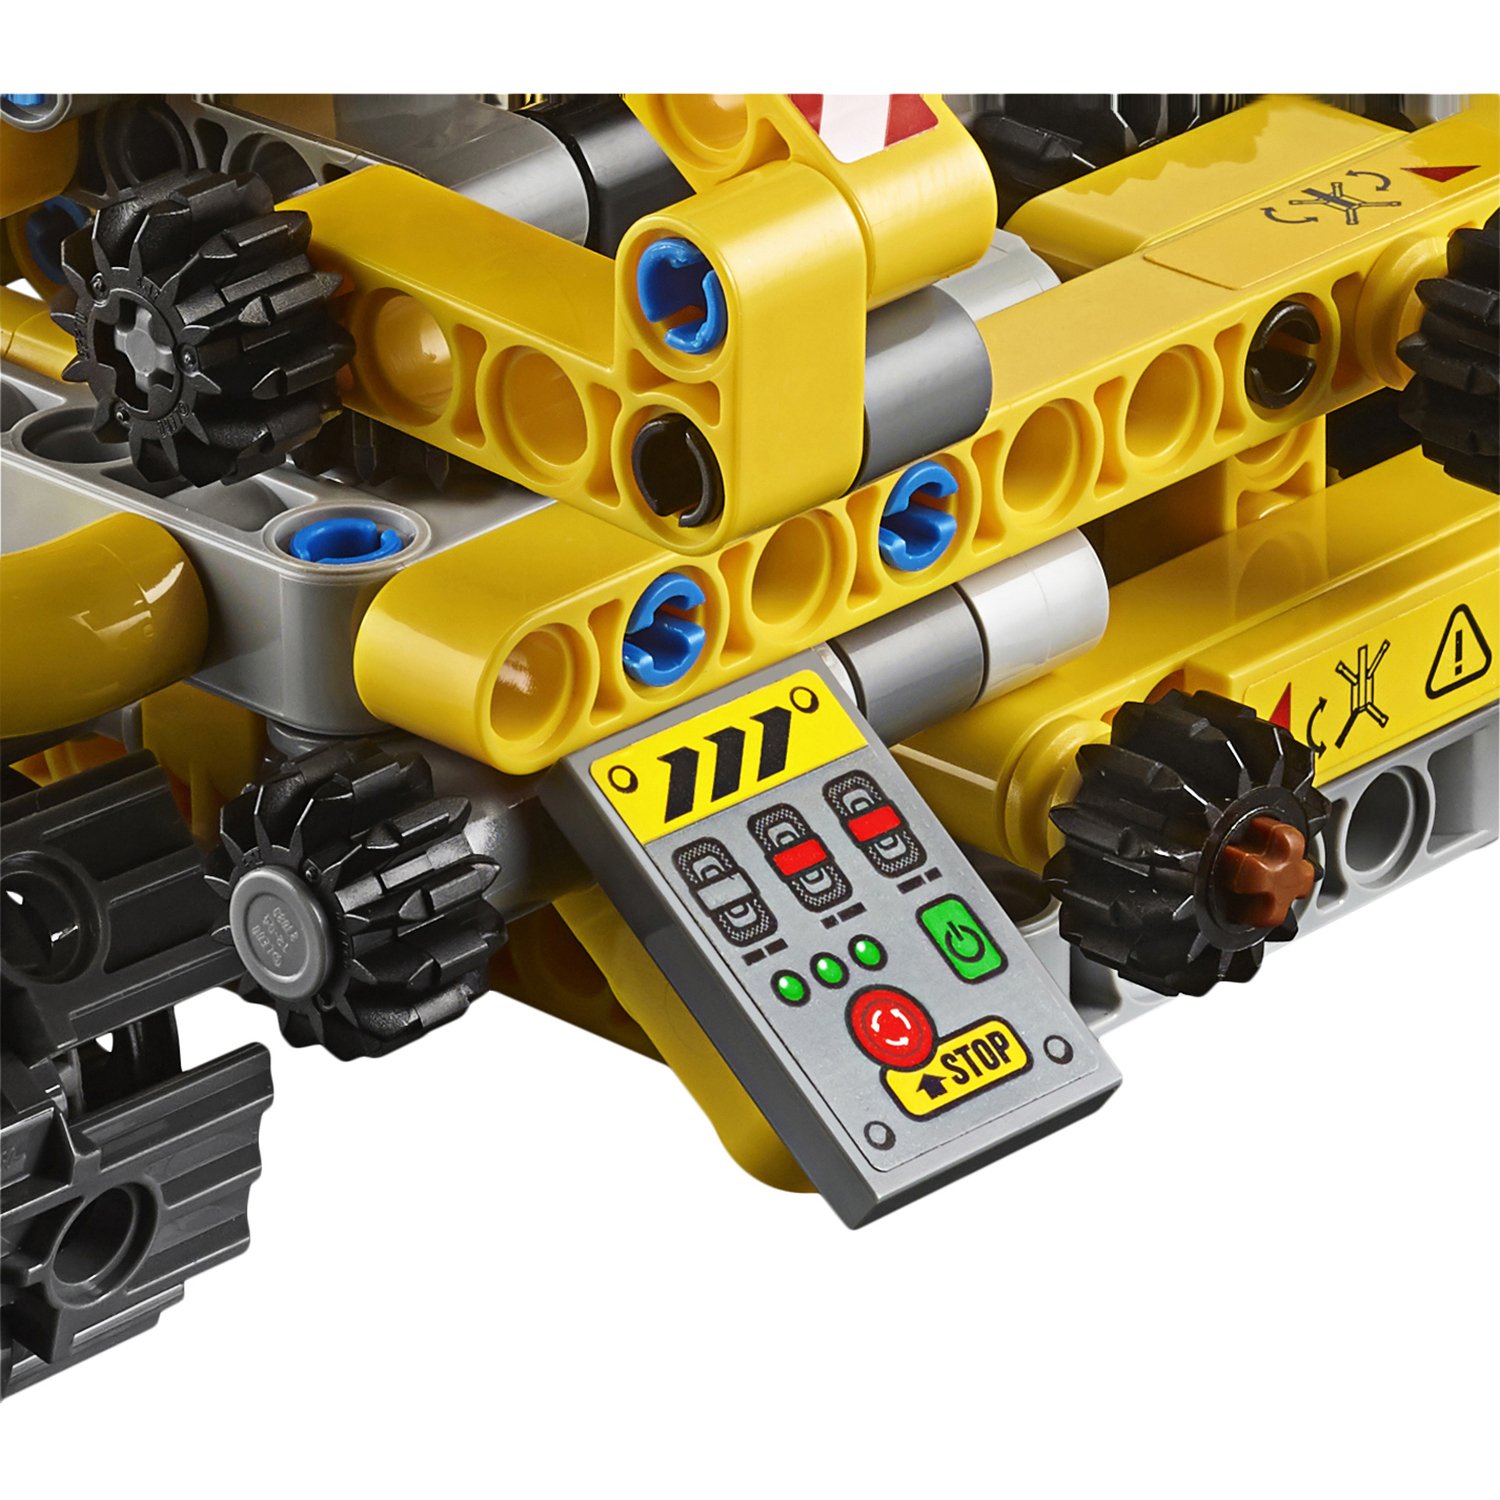 Lego Technic 42097 Мостовой кран